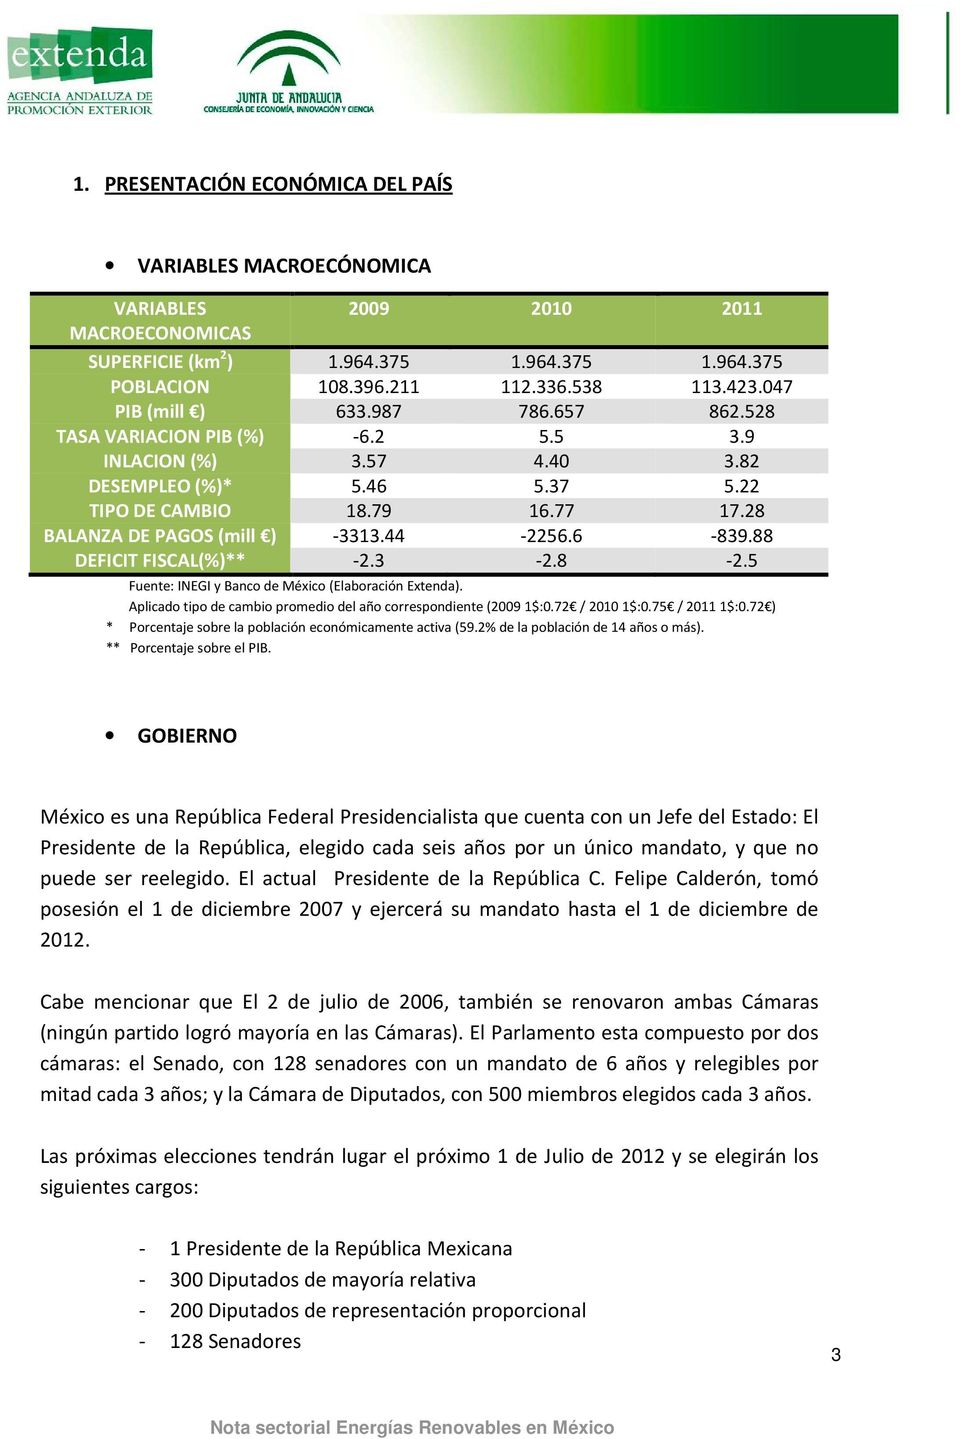 44-2256.6-839.88 DEFICIT FISCAL(%)** -2.3-2.8-2.5 Fuente: INEGI y Banco de México (Elaboración Extenda). Aplicado tipo de cambio promedio del año correspondiente (2009 1$:0.72 / 2010 1$:0.